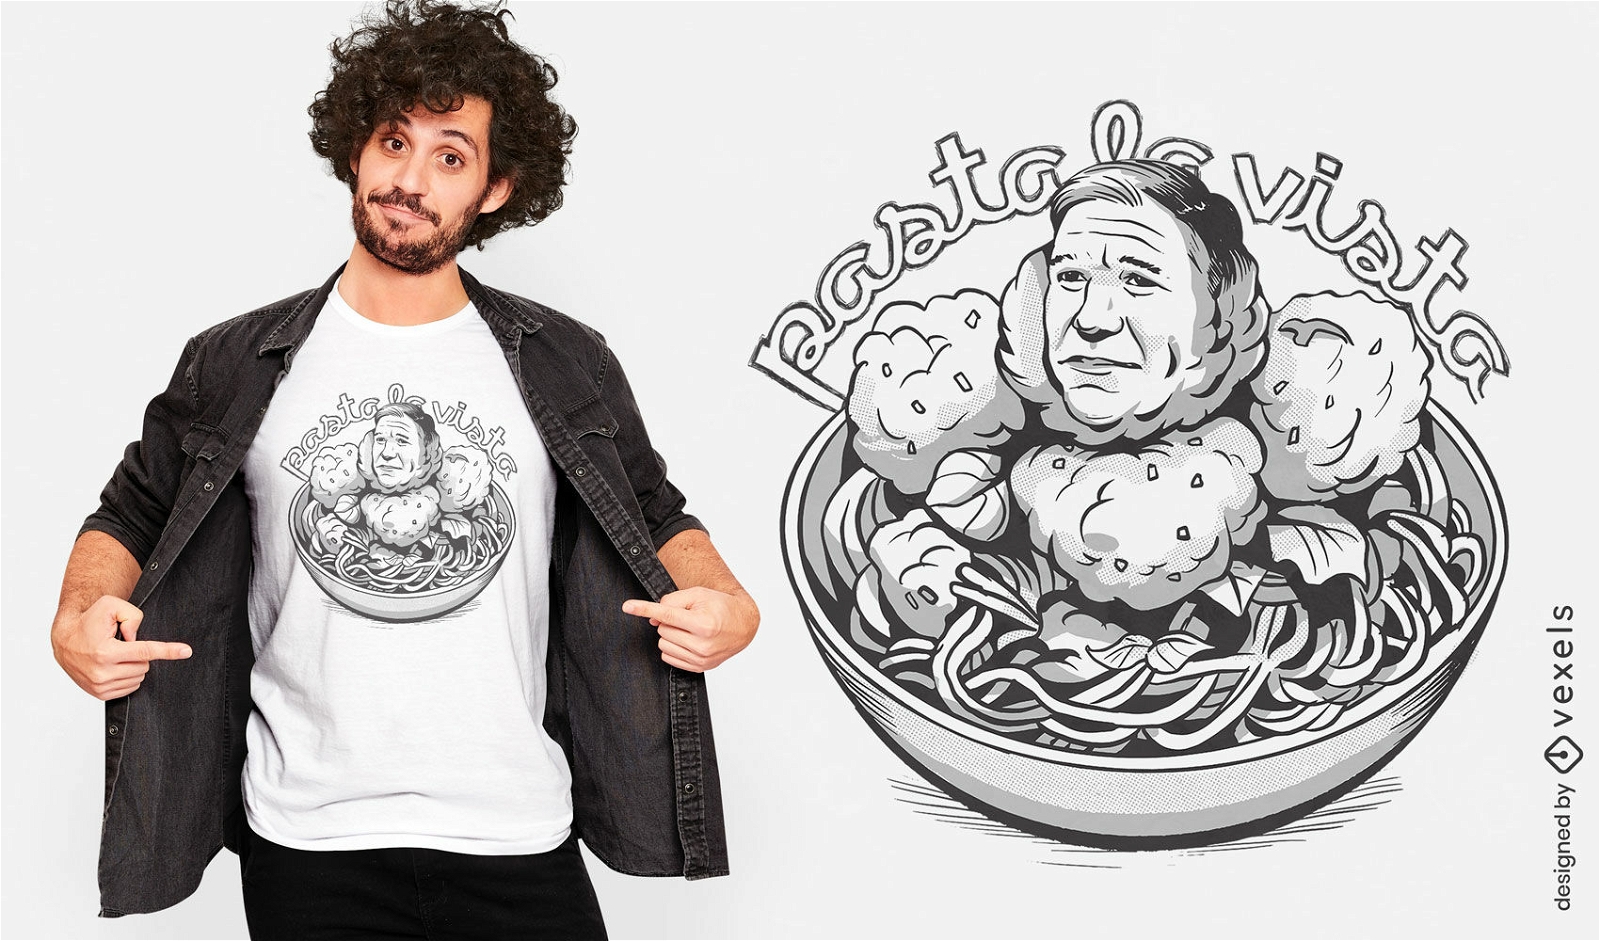 Diseño de camiseta de espagueti político satírico.